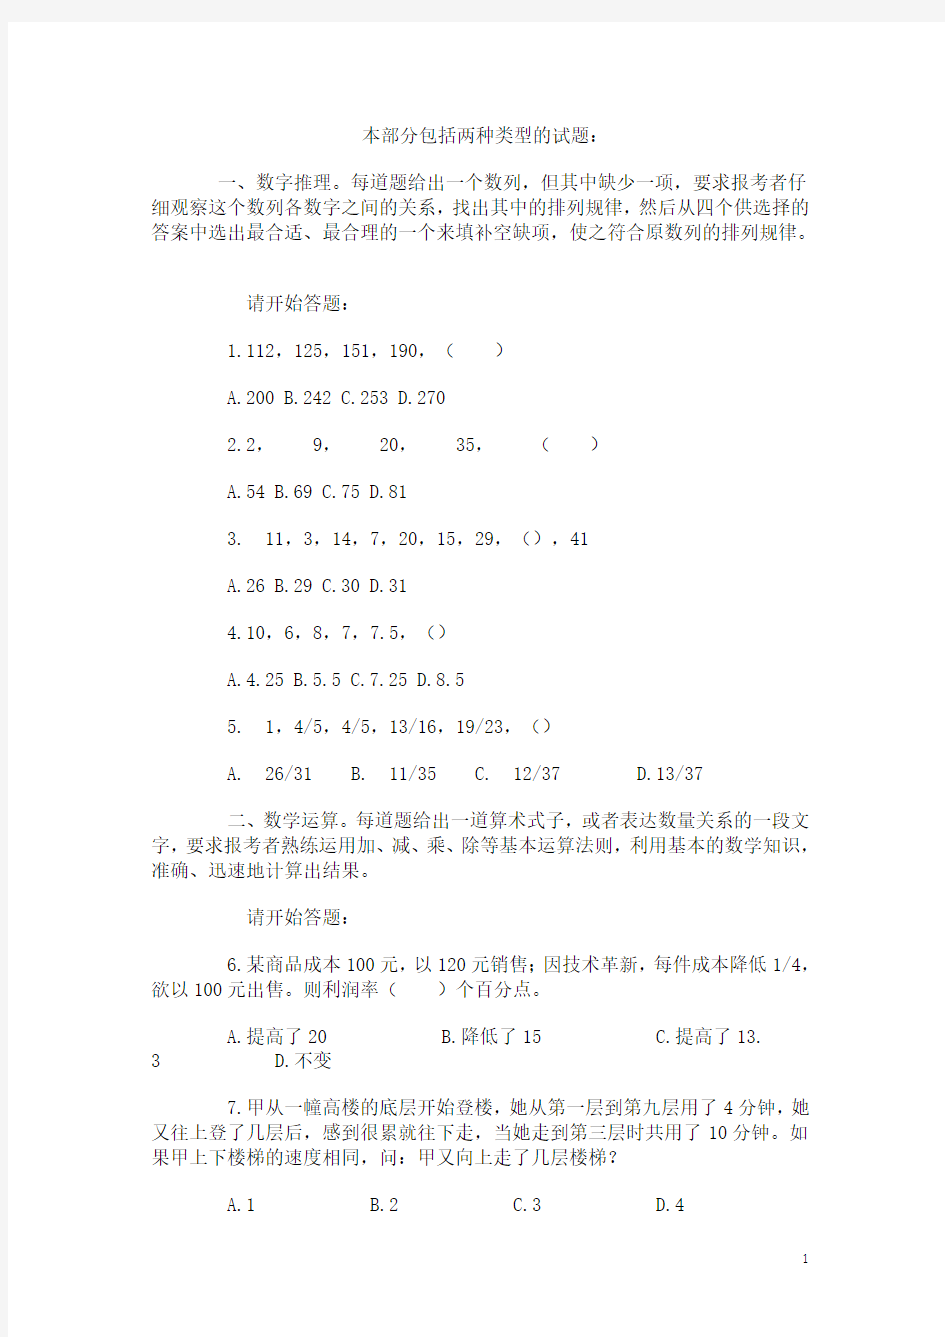 2014年广东省公务员考试《行政职业能力测验》真题试卷及答案解析